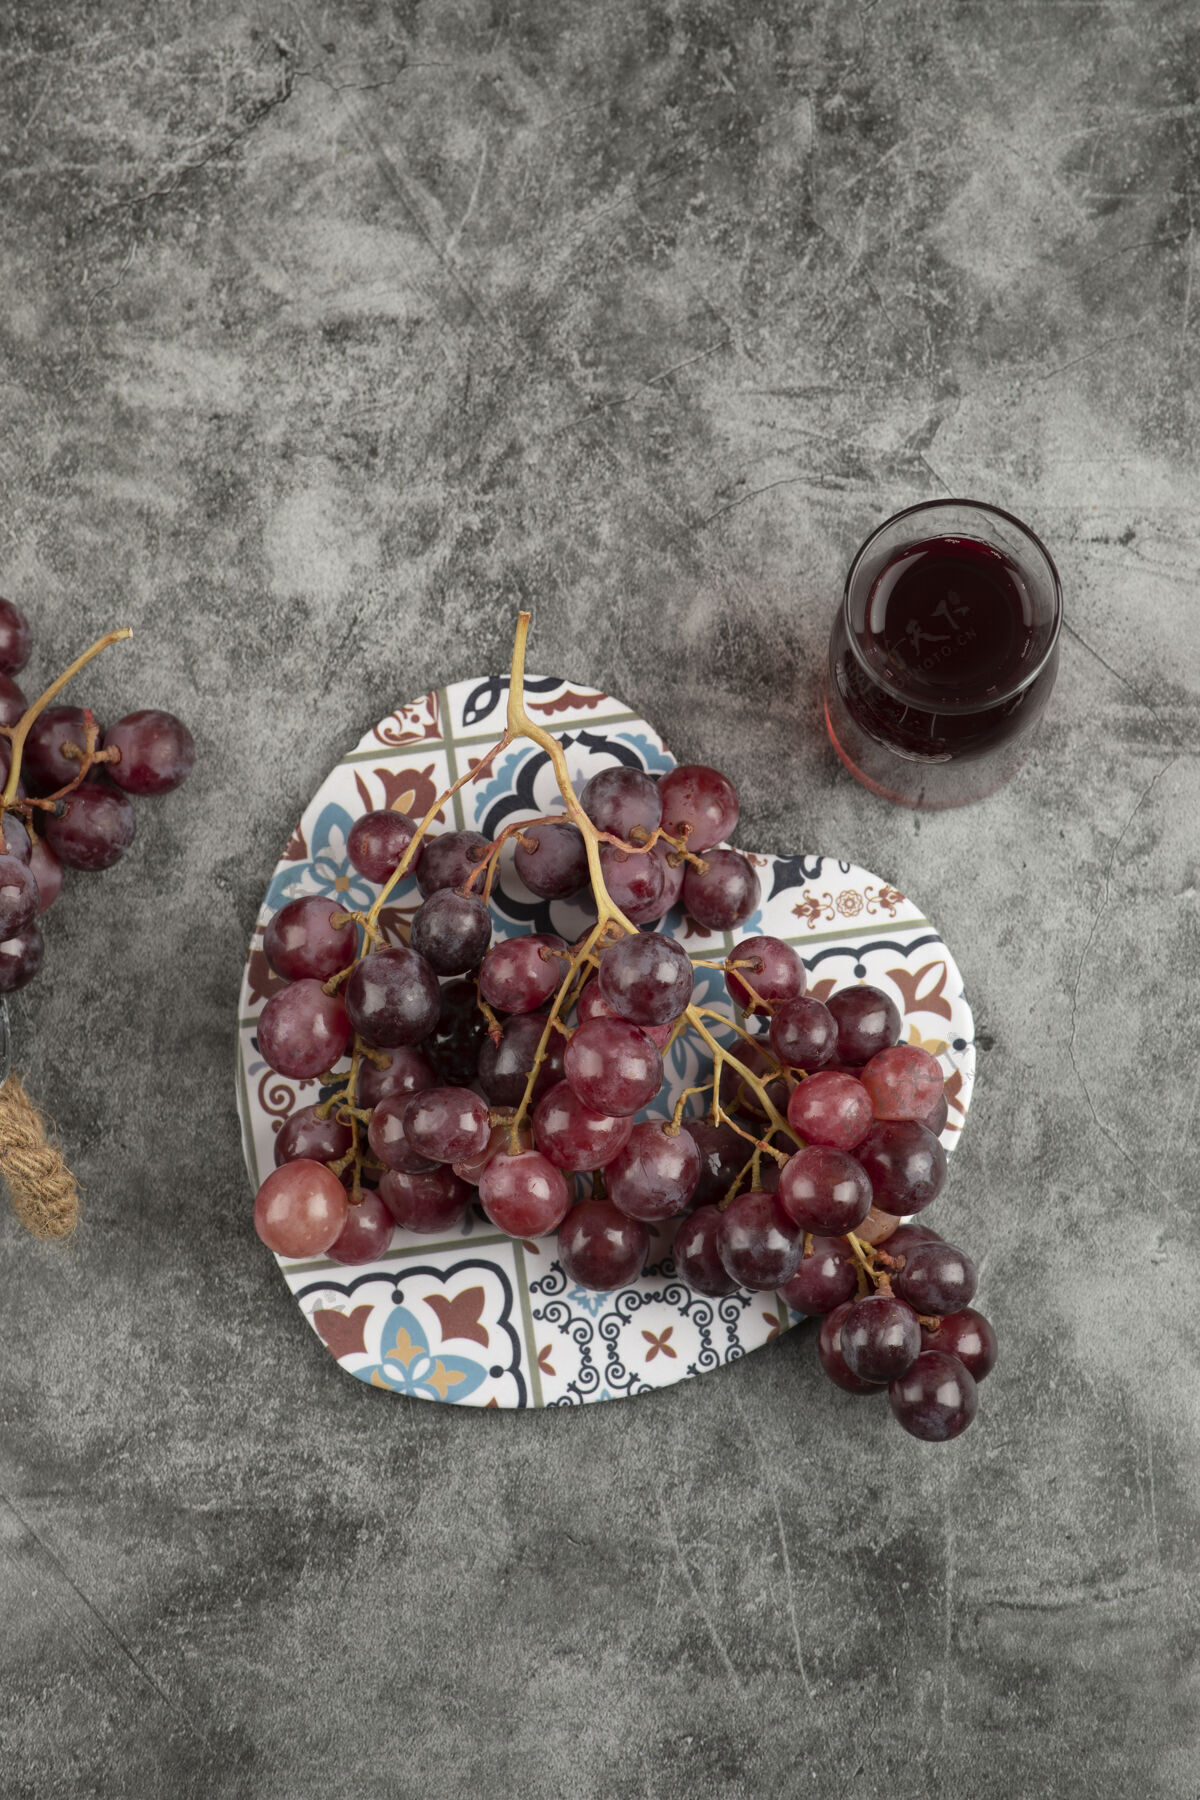 集群大理石桌上摆着一簇新鲜的红葡萄和一杯果汁成熟明亮酒庄